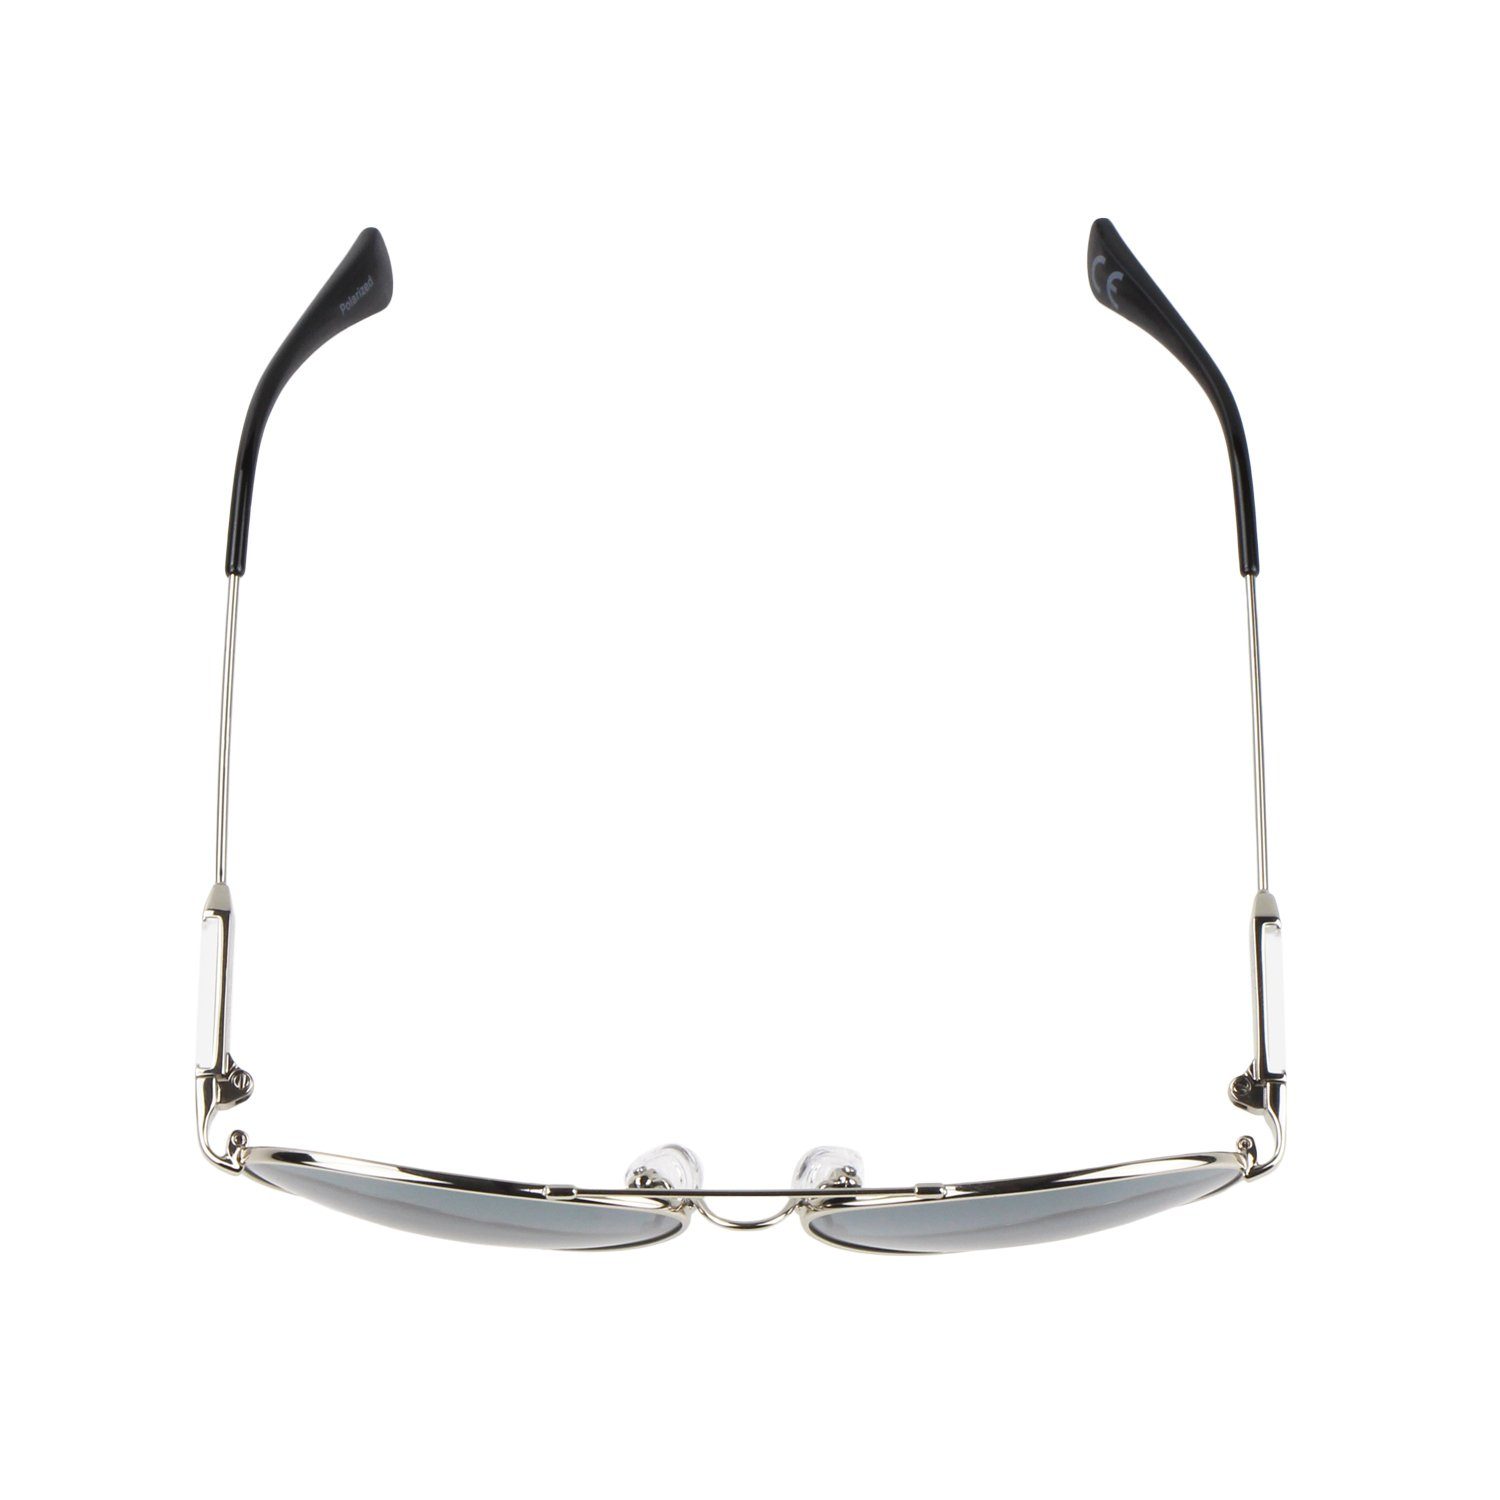 Schwarze Metall ActiveSol - Sonnenbrille Brillenputztuch Nasenbügel (inklusive Pilotenbrille SUNGLASSES Silber und Kinder, Flieger-Brille - Bügel Gläser im Memory mit 10 Metall Jahre, Schiebeschachtel) für 6